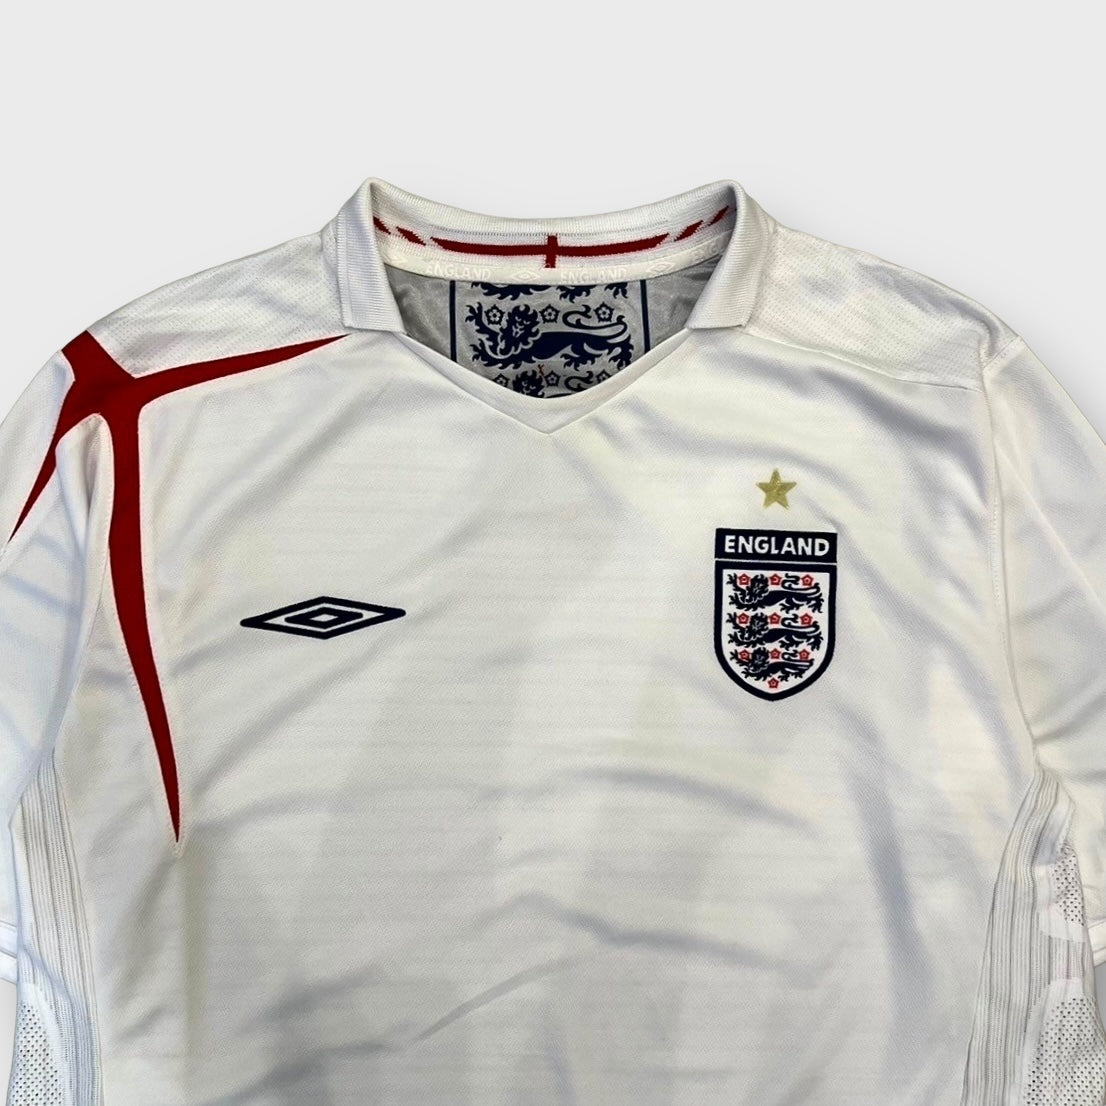 00's UMBRO "ENGLAND" team shirt